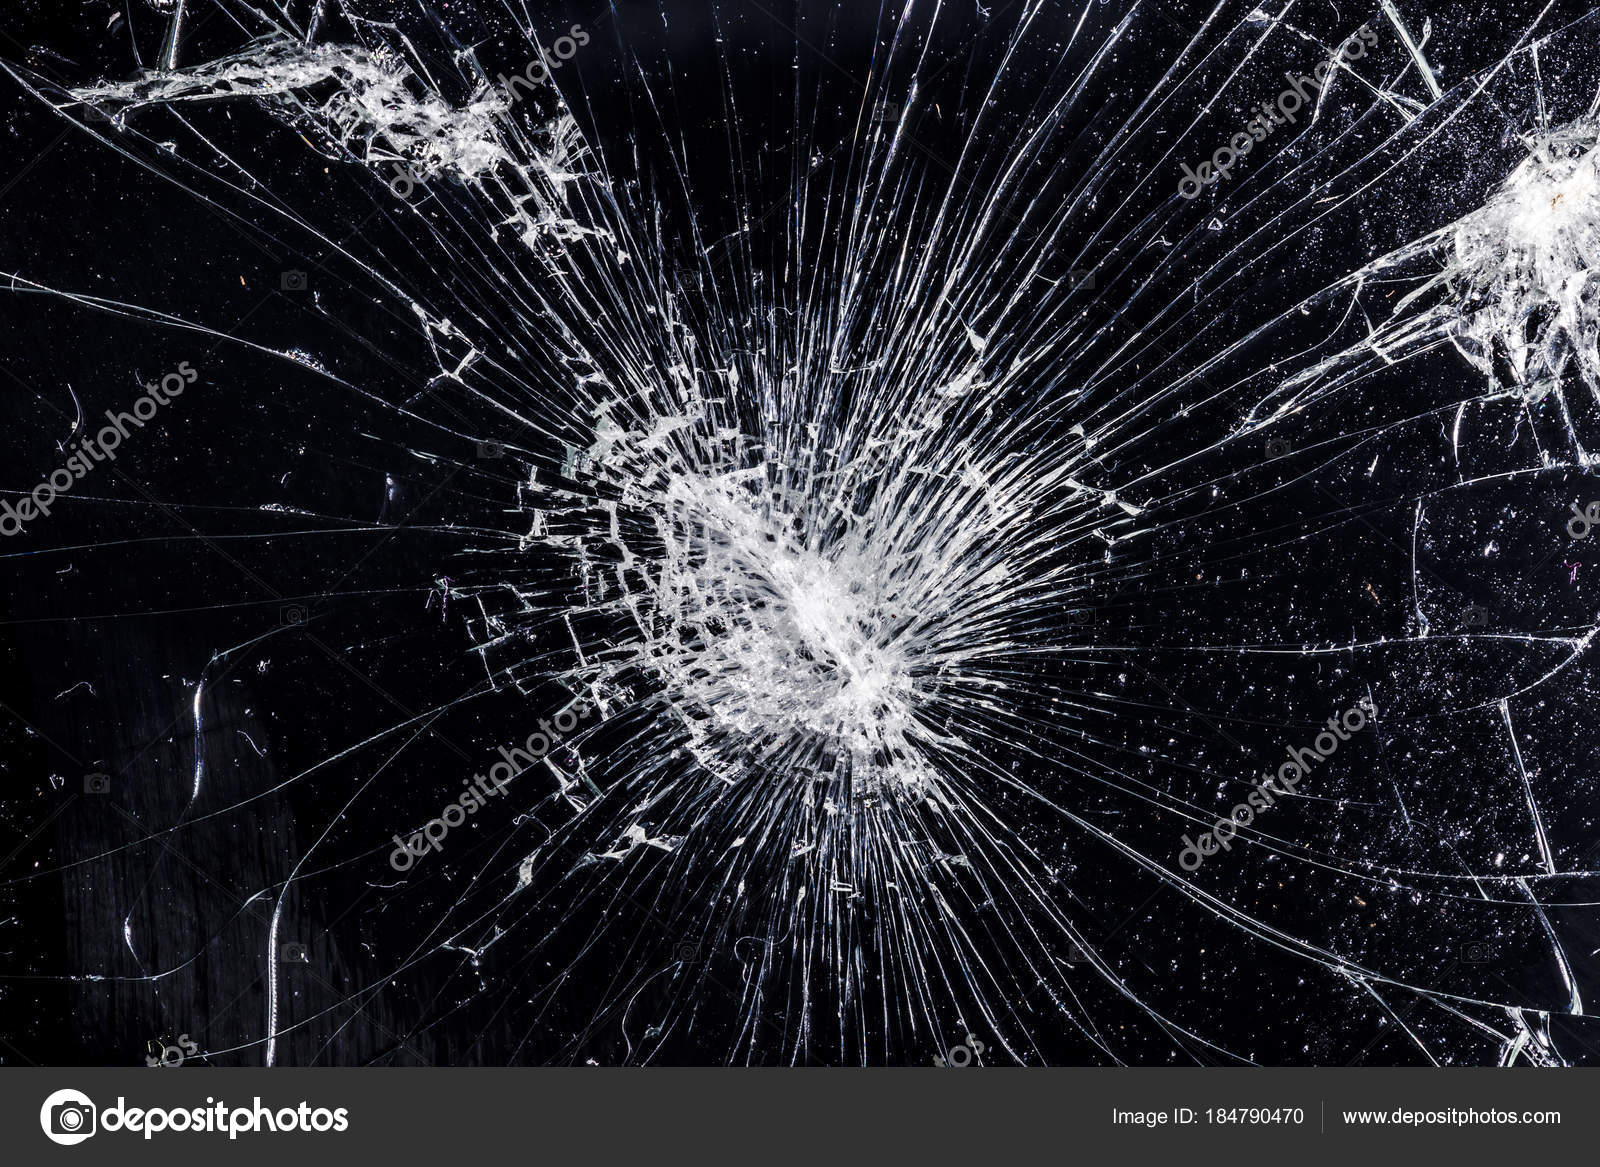 Broken screen texture — Stock Photo © AlesMunt #184790470